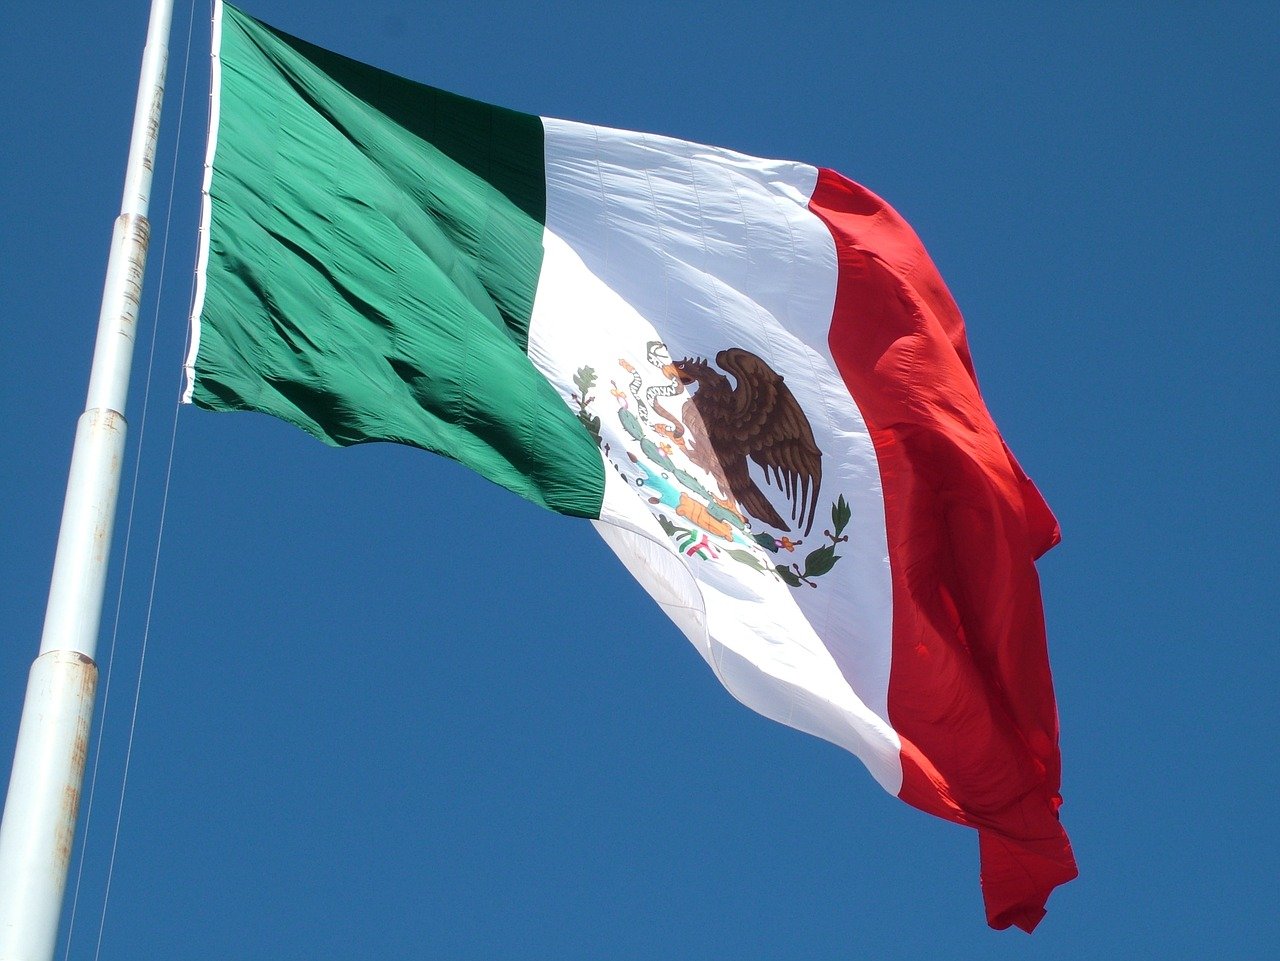 Legisladores mexicanos solicitan despojar al gobernador de inmunidad por presuntos vínculos con el crimen organizado